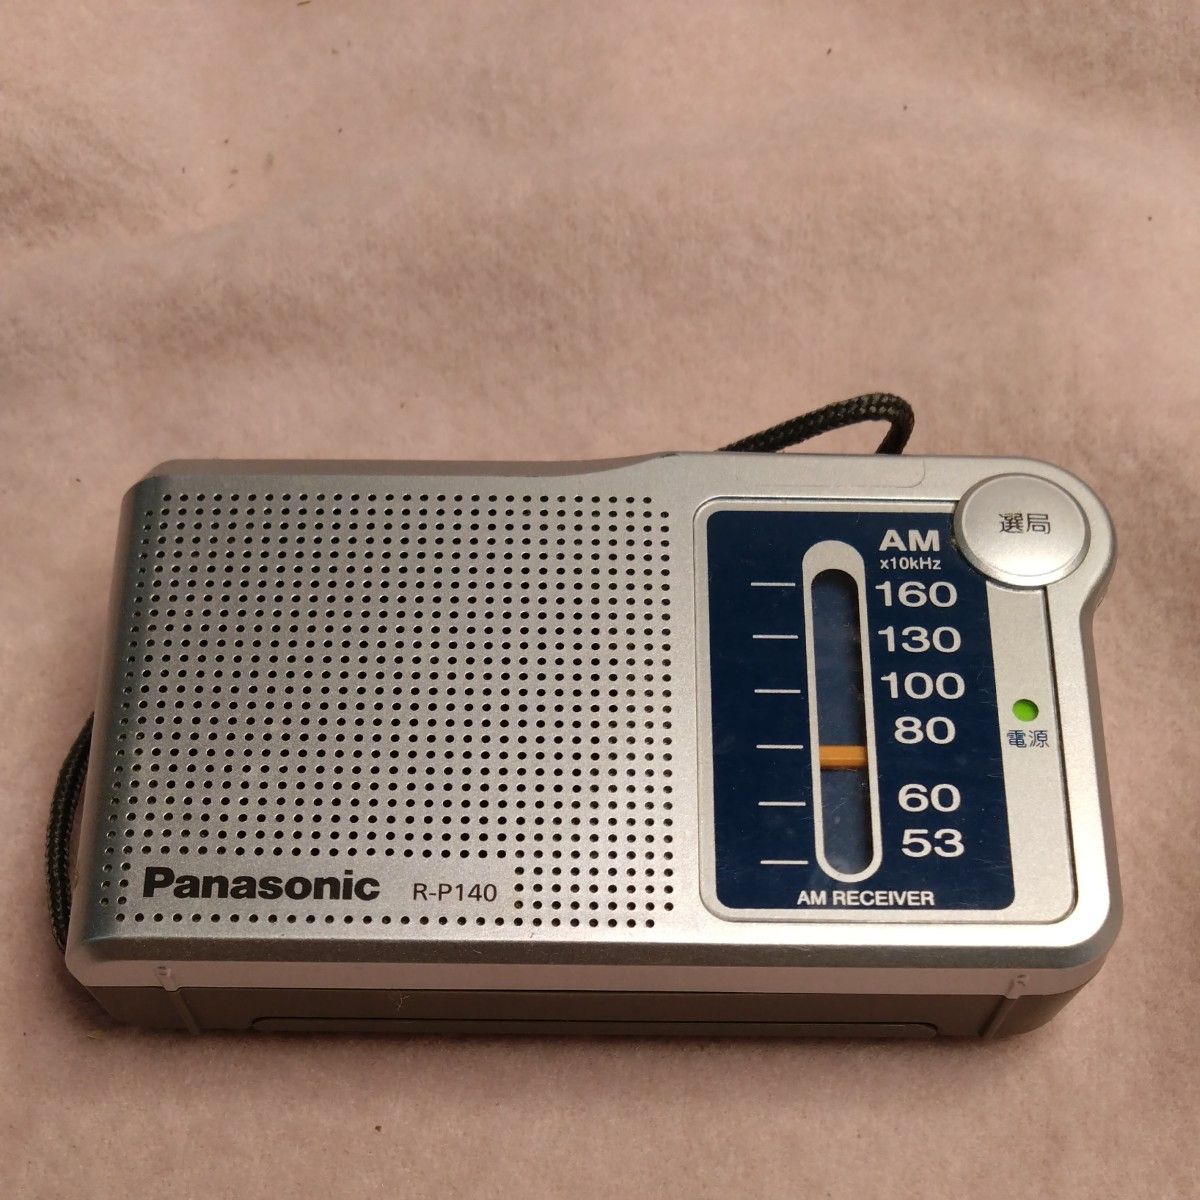 MK9788 Panasonic R-P140 AMコンパクトトランジスタラジオ